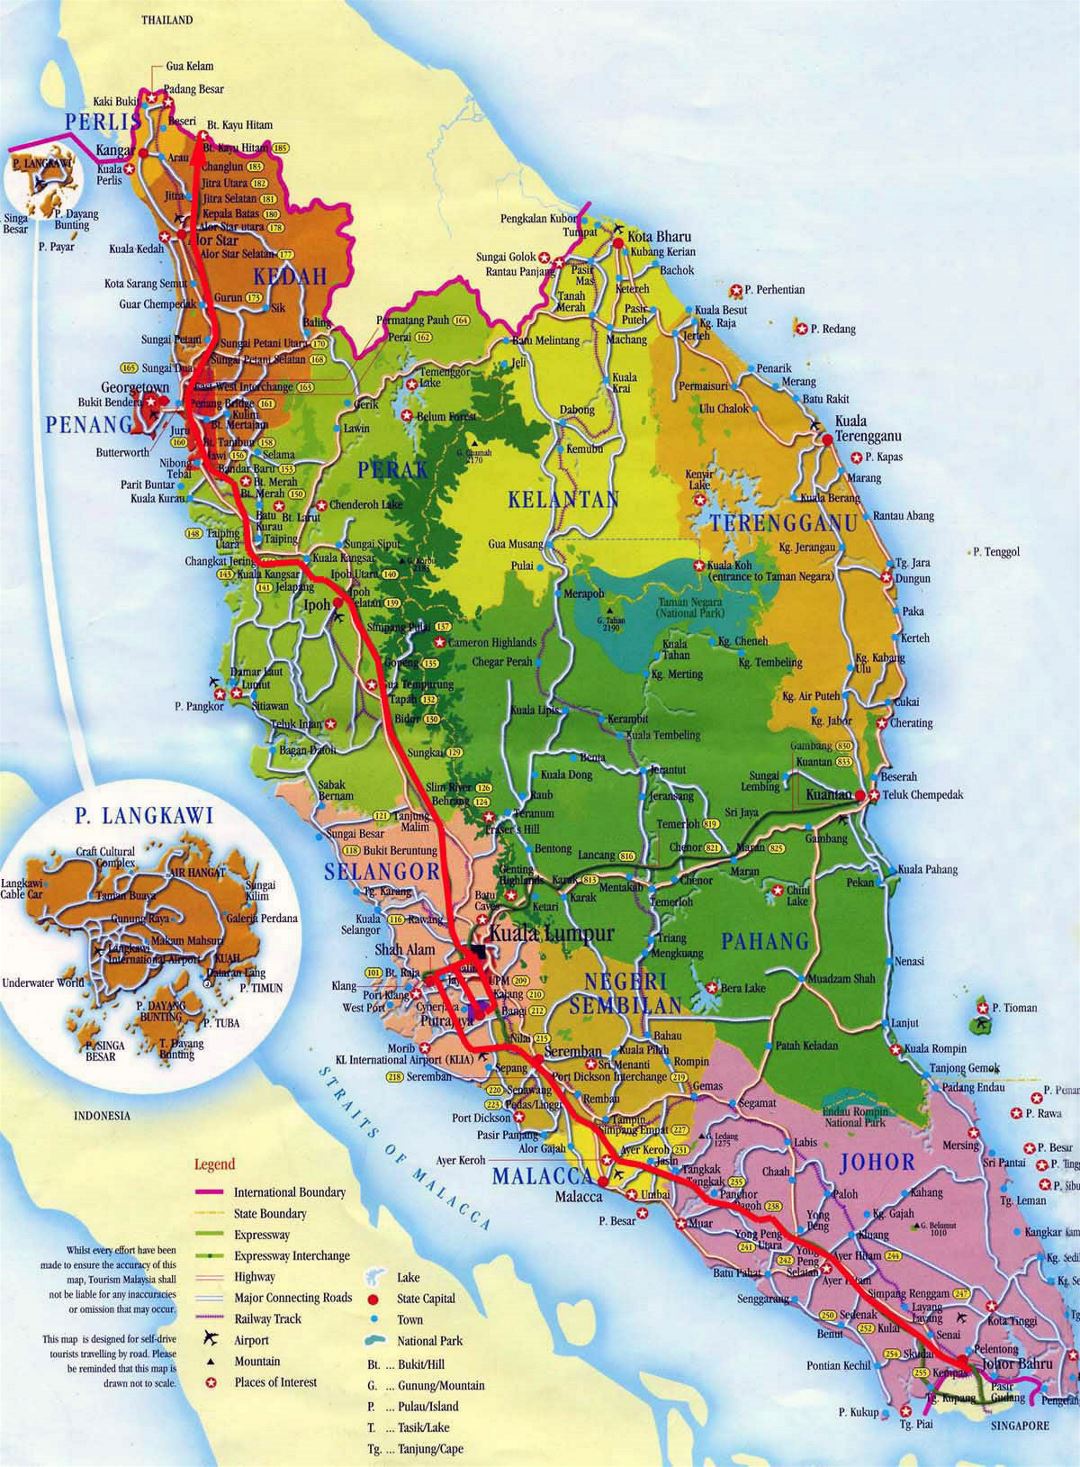 Detallado mapa turístico y administrativo de Malasia occidental con carreteras, ciudades y aeropuertos